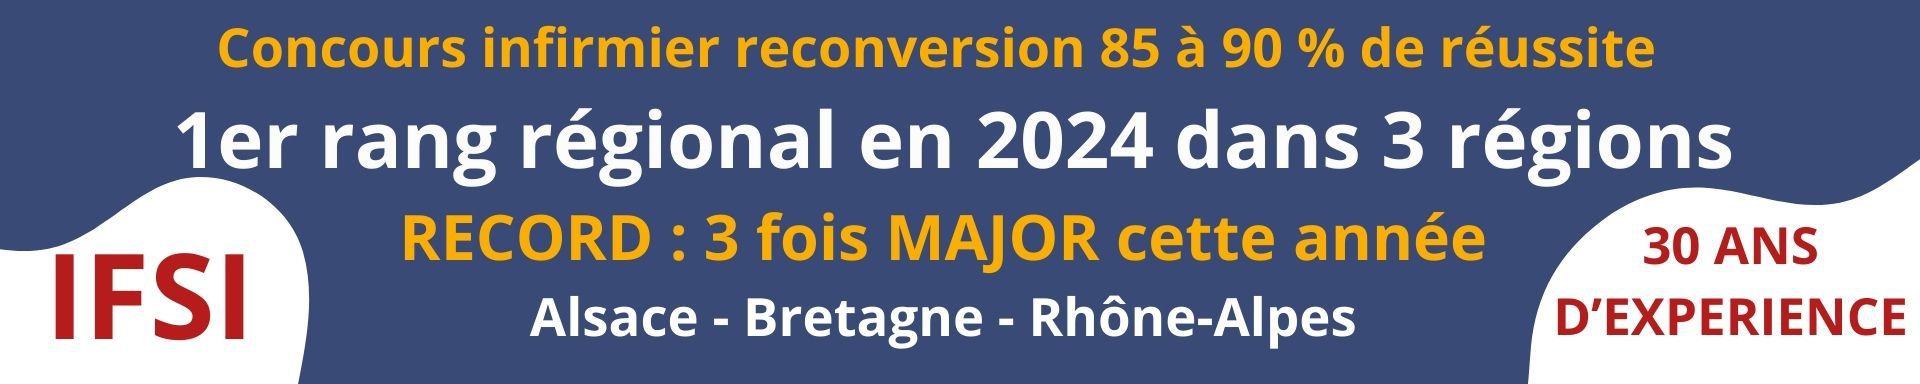 sujets concours infirmier 2024 Avignon